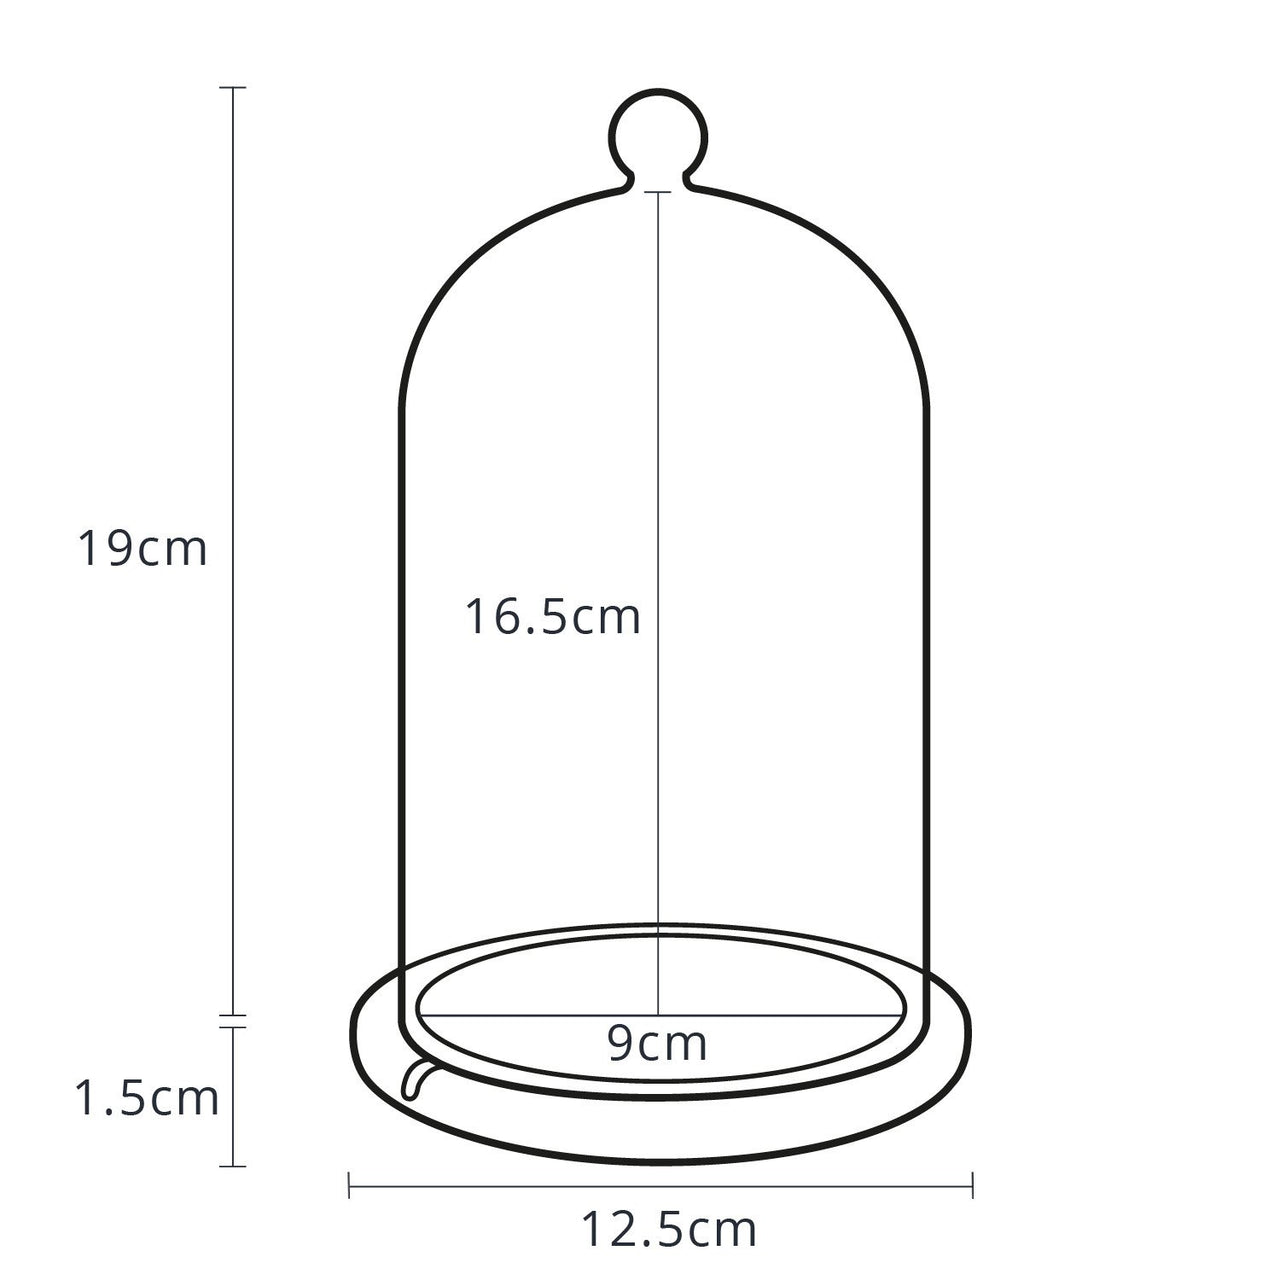 Dimensionen der Glasglocke mit Holzteller.